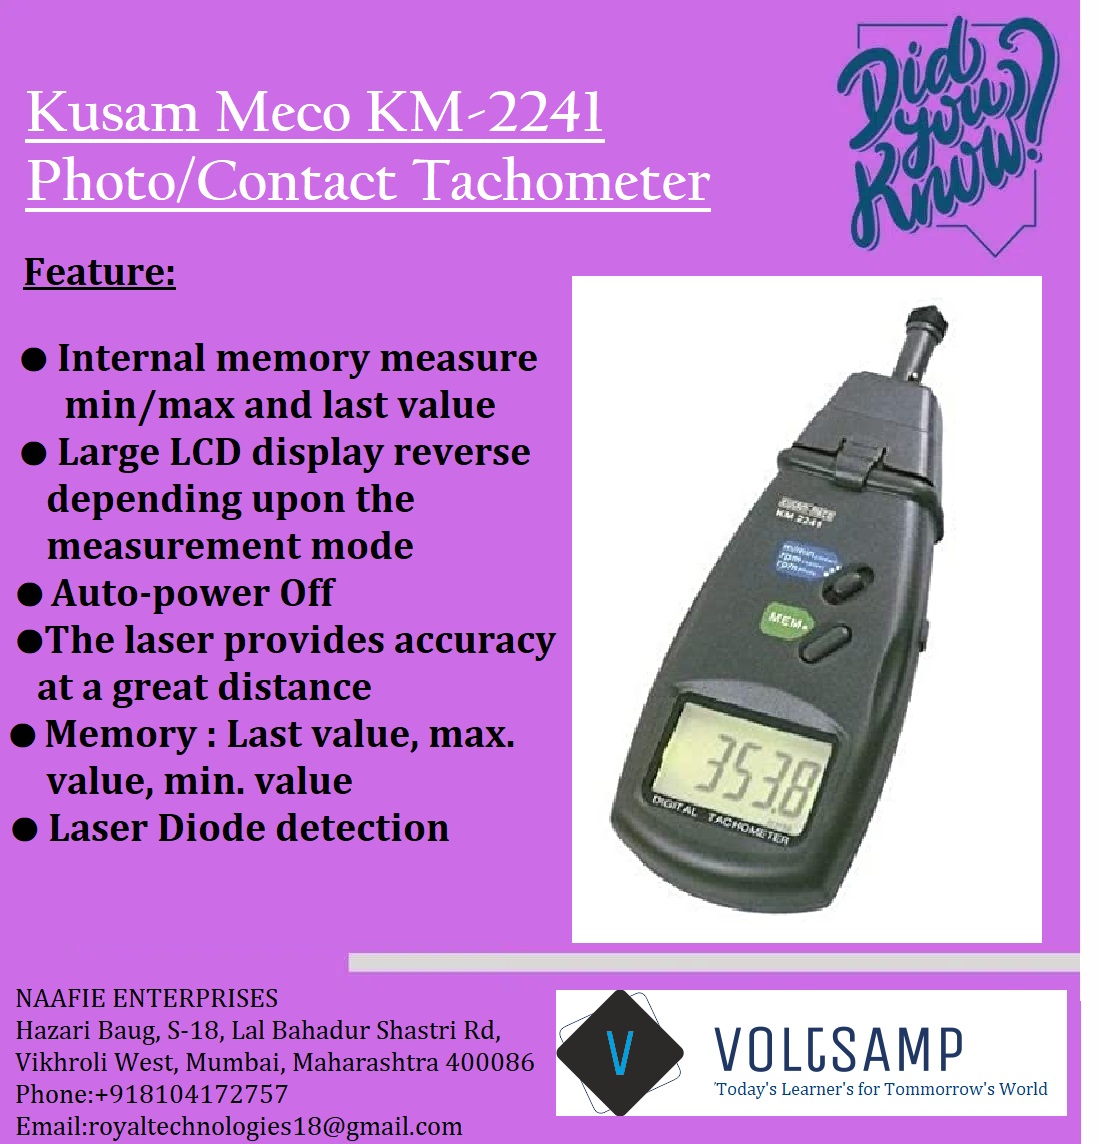 Kusam Meco KM-2241 Photo/Contact Tachometer